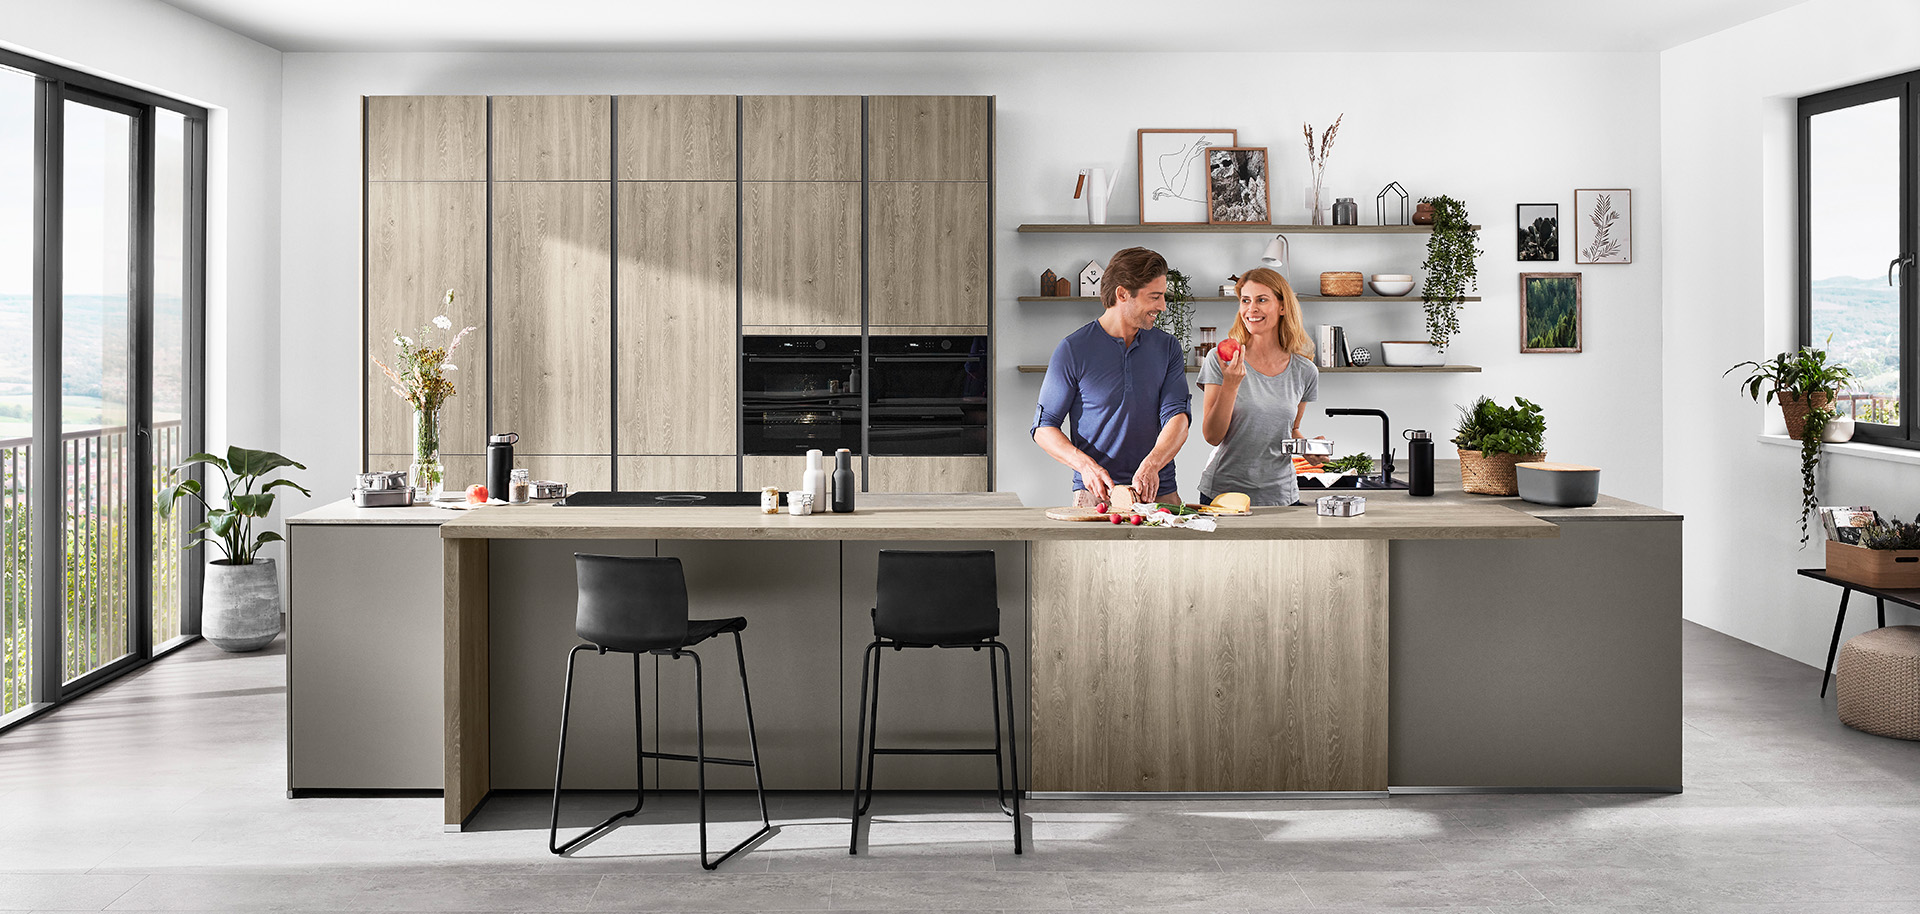 Una cucina moderna con una coppia che prepara il cibo insieme, con mobili eleganti, elettrodomestici integrati e un'isola con sgabelli da bar che si affaccia su una vista panoramica.